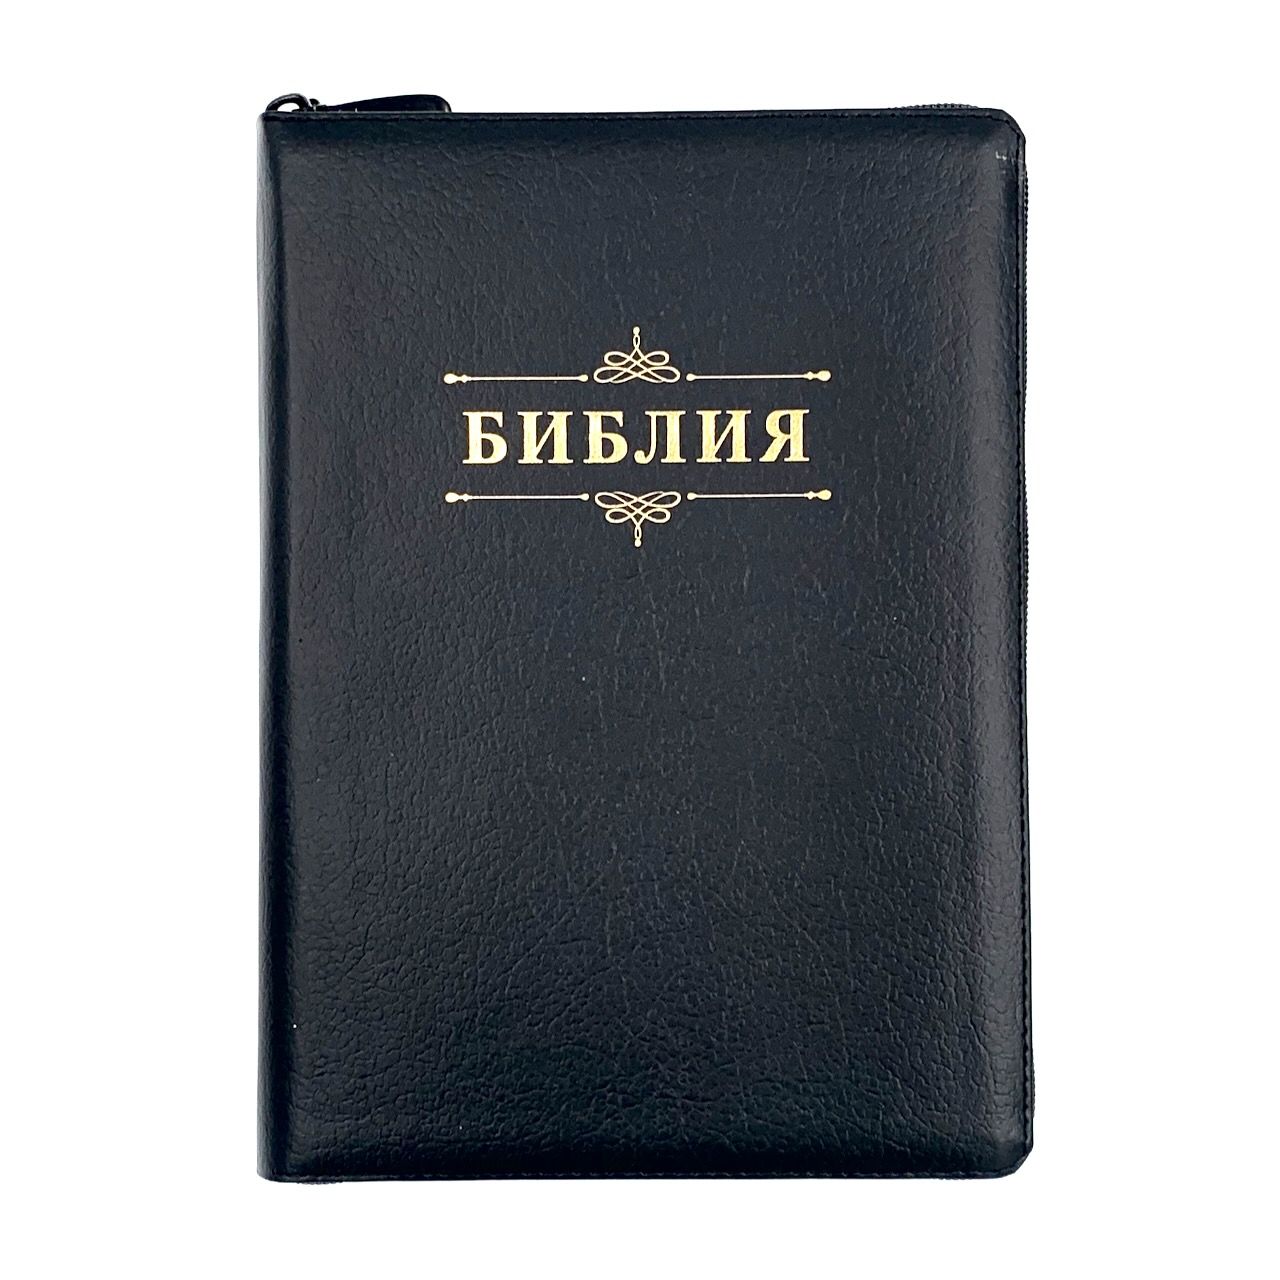 Библия 076zti код 23076-4, дизайн "слово Библия", кожаный переплет на молнии с индексами, цвет черный пятнистый, размер 180x243 мм